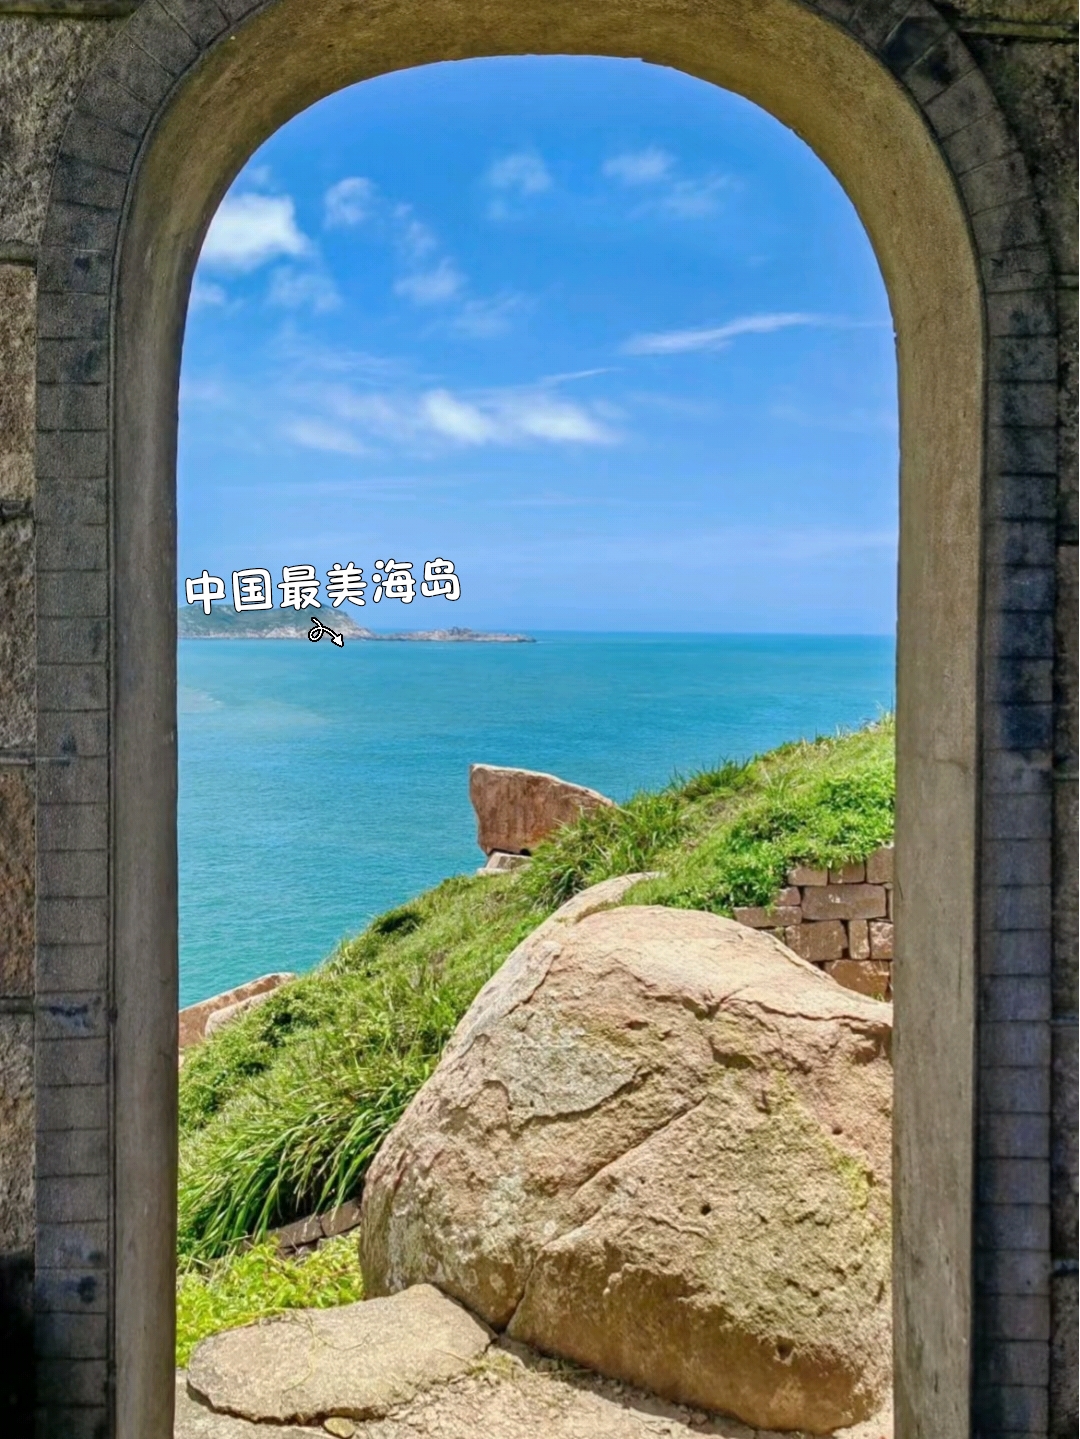 《国家地理》评为“中国最美海岛”有多绝⁉️